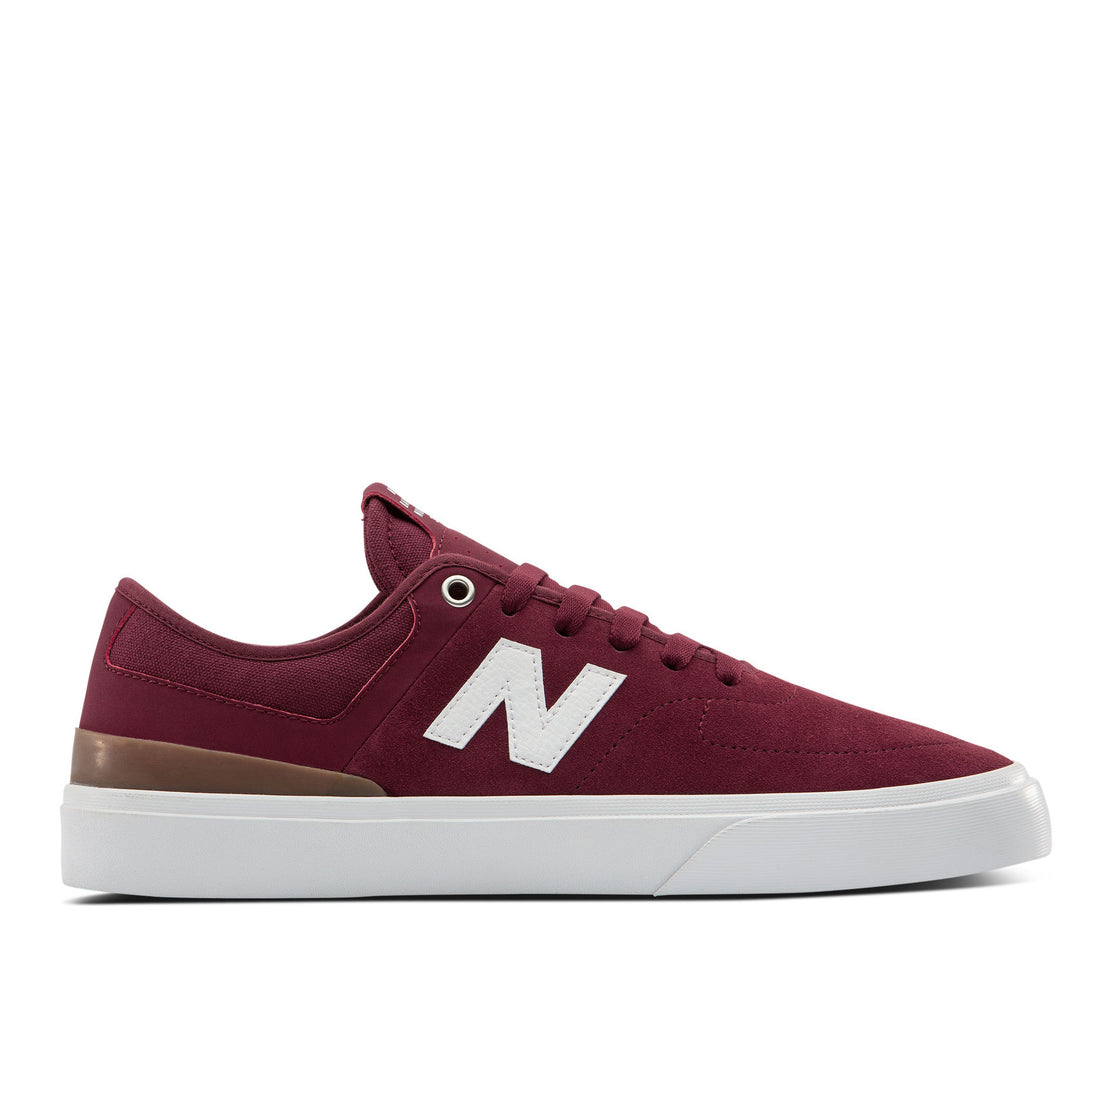 New Balance Numeric 379 Shoes | Burgundy / White / Grey